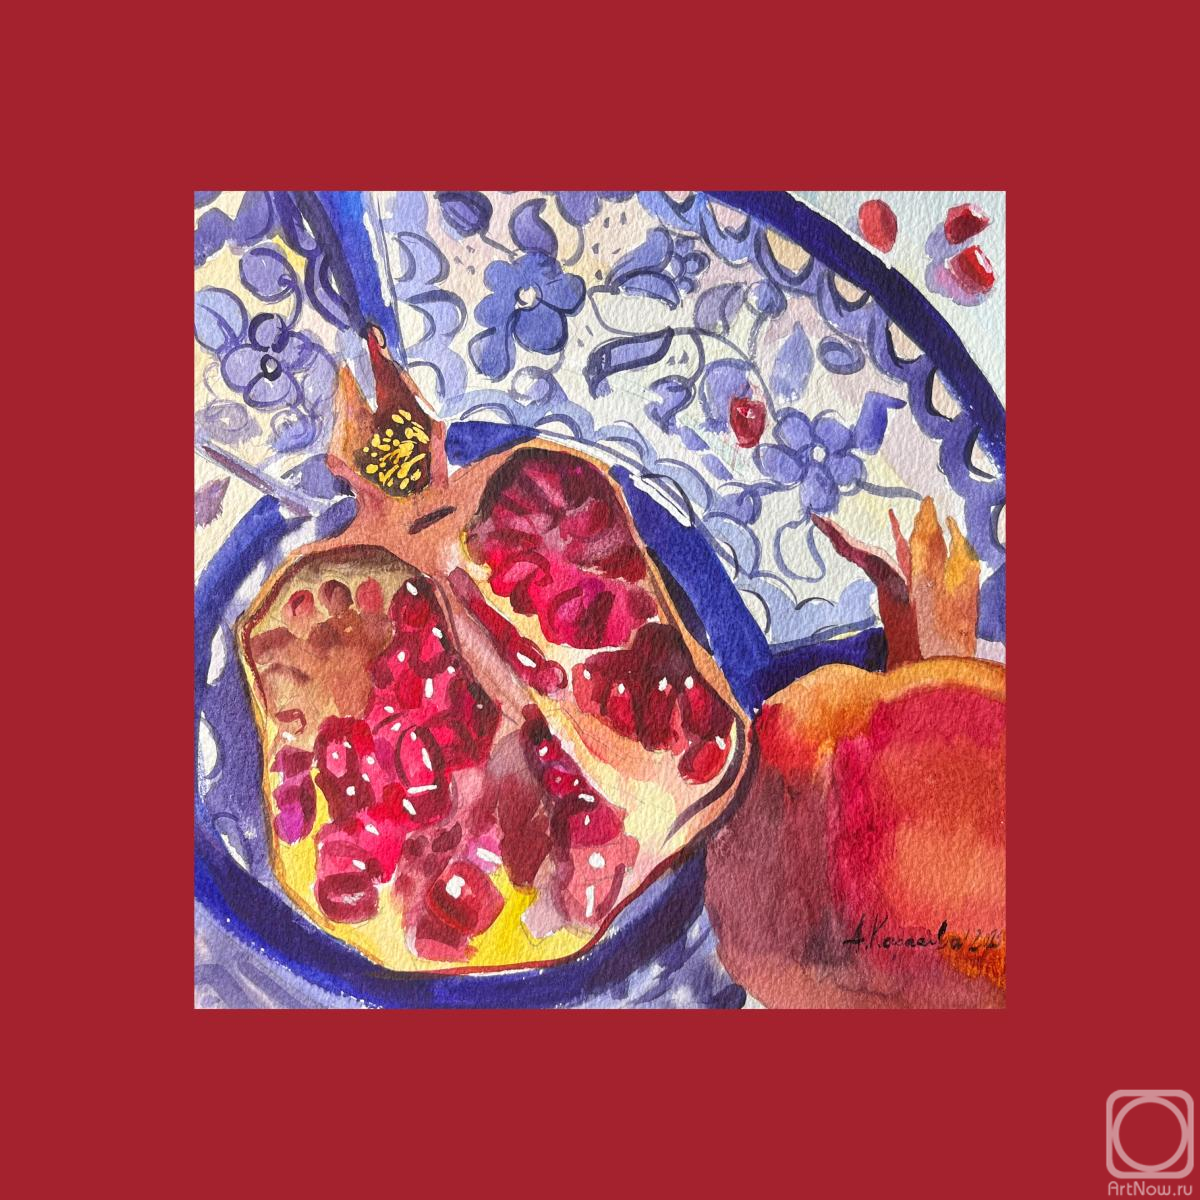 Zenchanka Hanna. "Pomegranates and Blue"